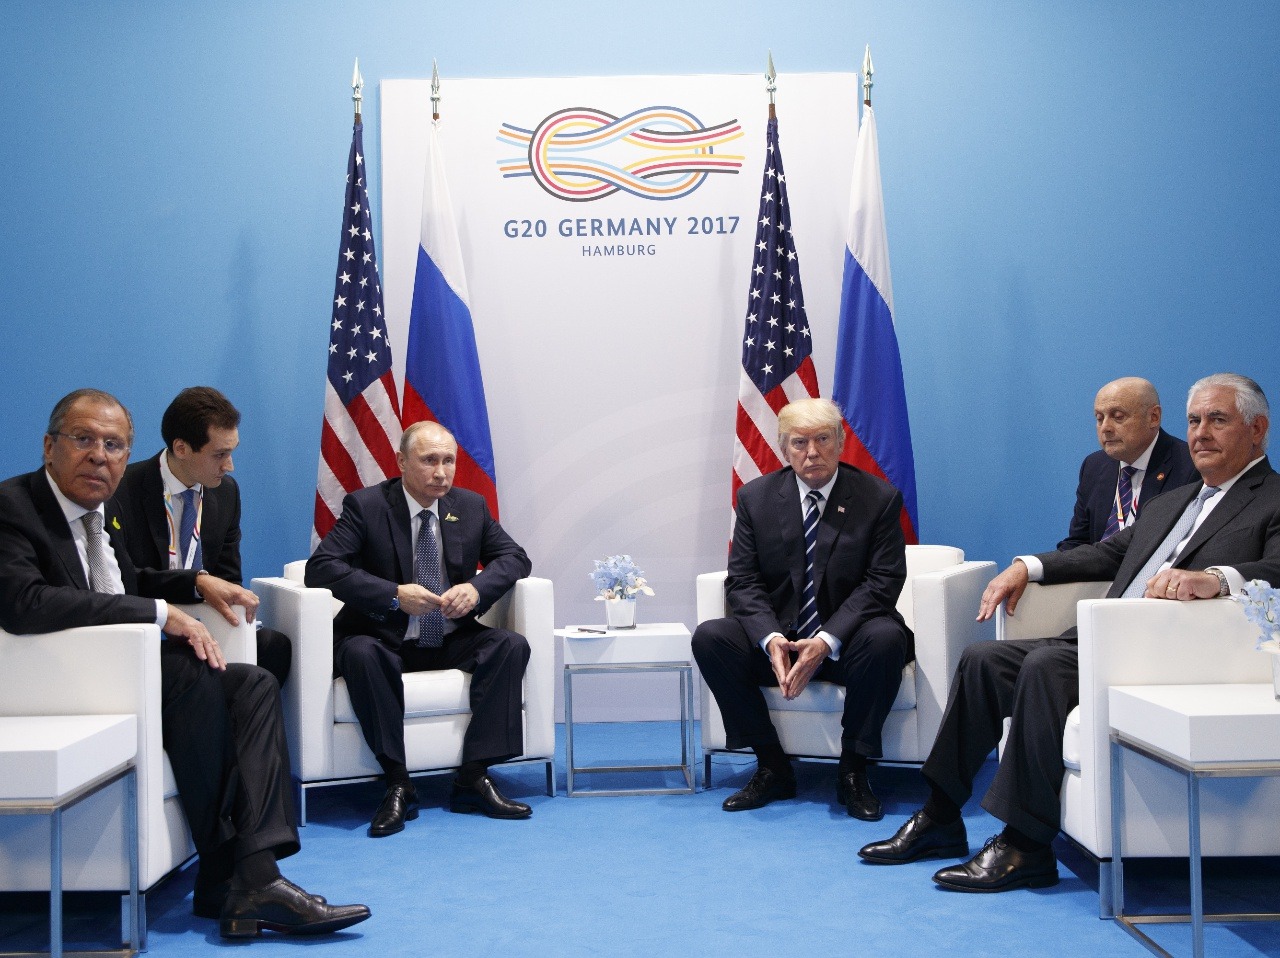 Stretnutie hláv Ruska a Ameriky na summite G20 v Hamburgu